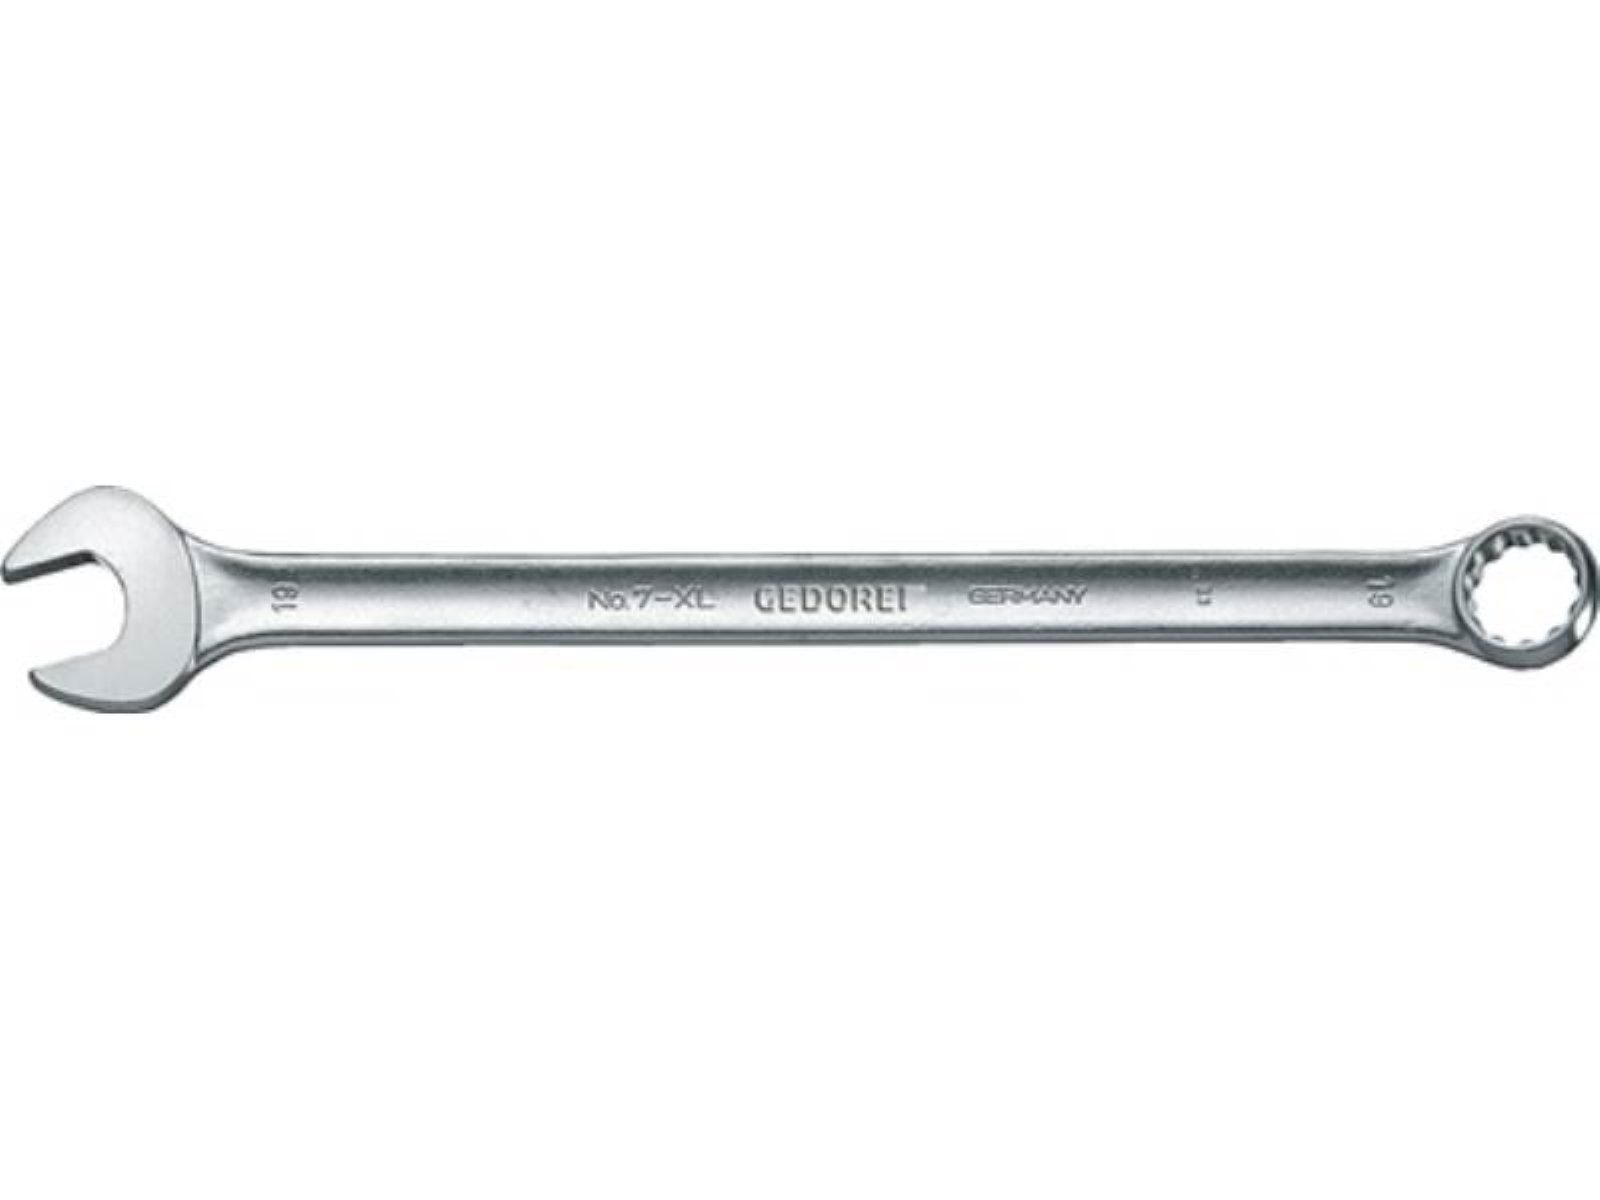 11mm L.200mm SW Gedore ext.lang A 7 GEDOR Form CV-Stahl Ringmaulschlüssel Maulschlüssel XL